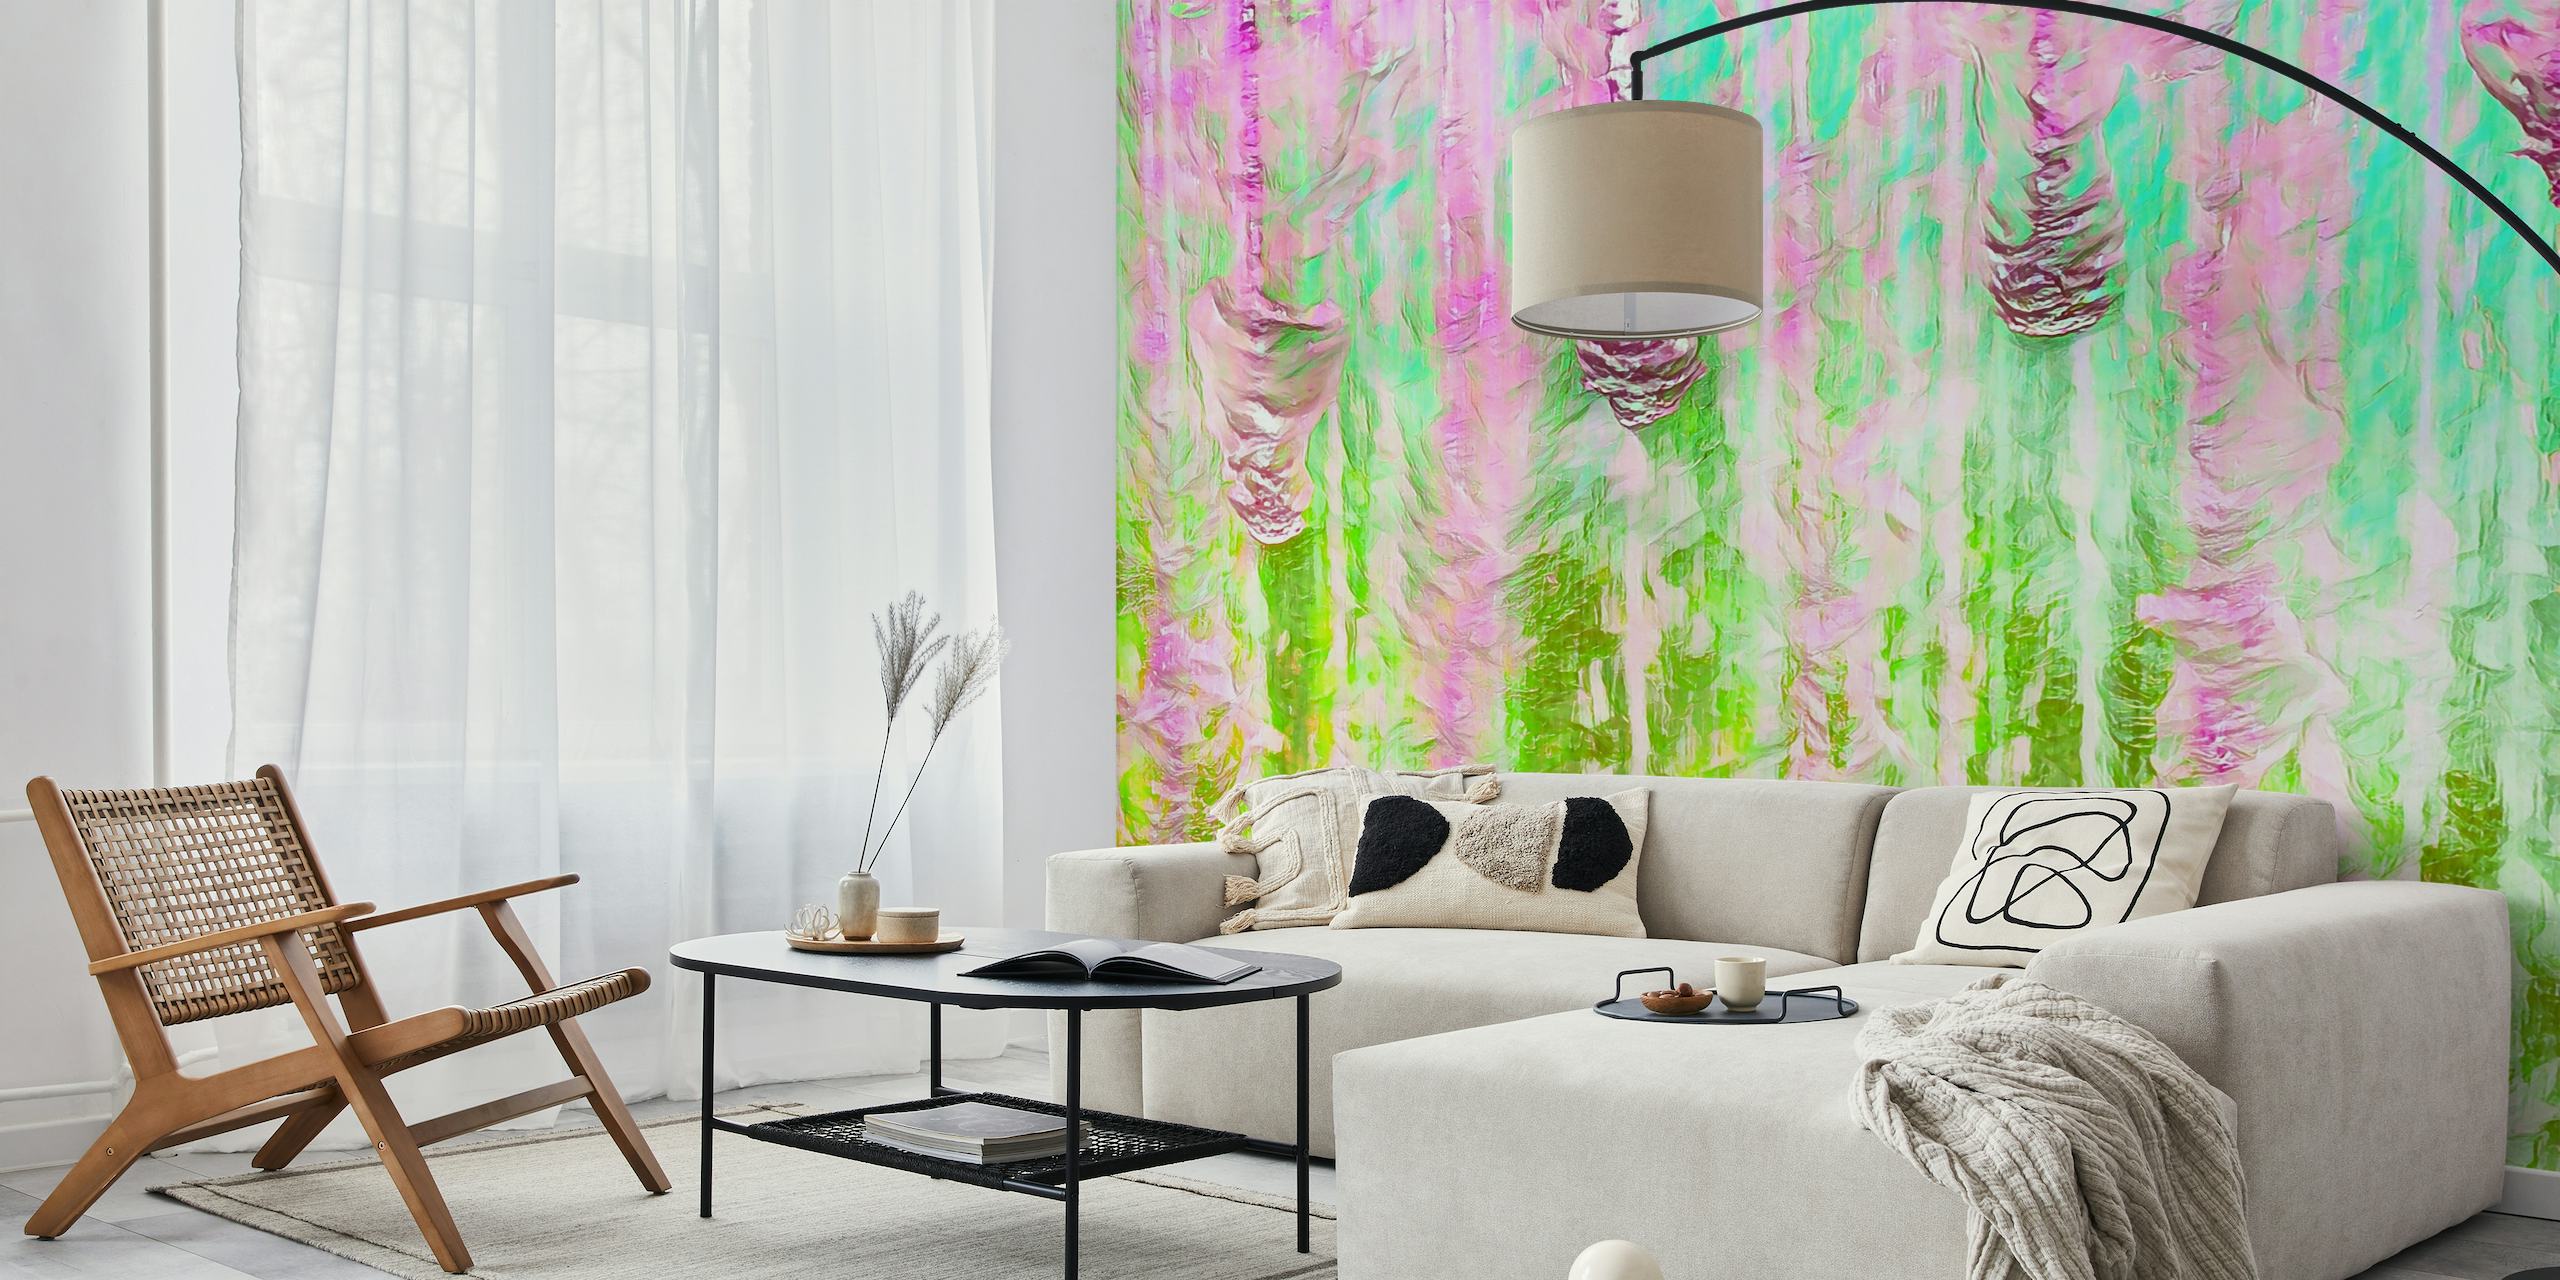 Värikäs abstrakti Happy Liquid Paint Flow -seinämaalaus, jossa on eloisia vaaleanpunaisia ja vihreitä sävyjä, jotka luovat virtaavan akvarelliefektin.